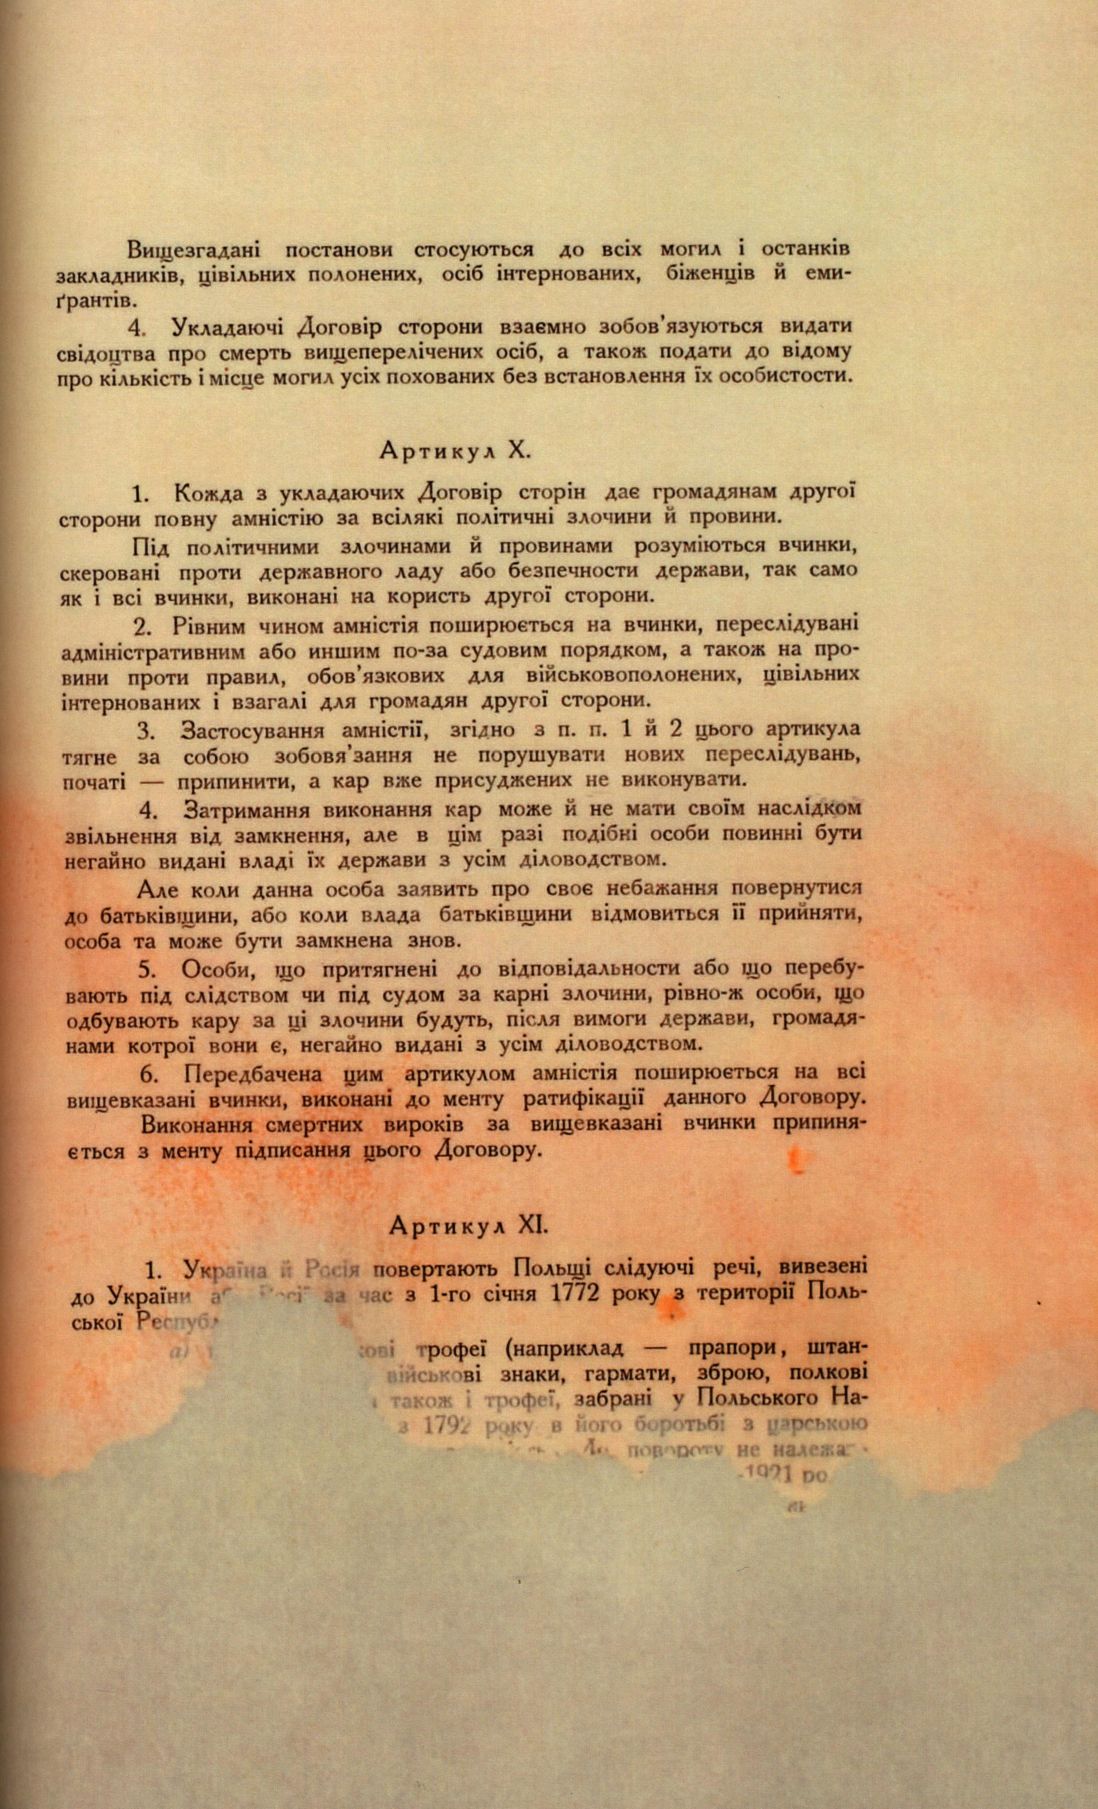 Traktat Pokoju między Polską a Rosją i Ukrainą podpisany w Rydze dnia 18 marca 1921 roku, s. 43, MSZ, sygn. 6739.